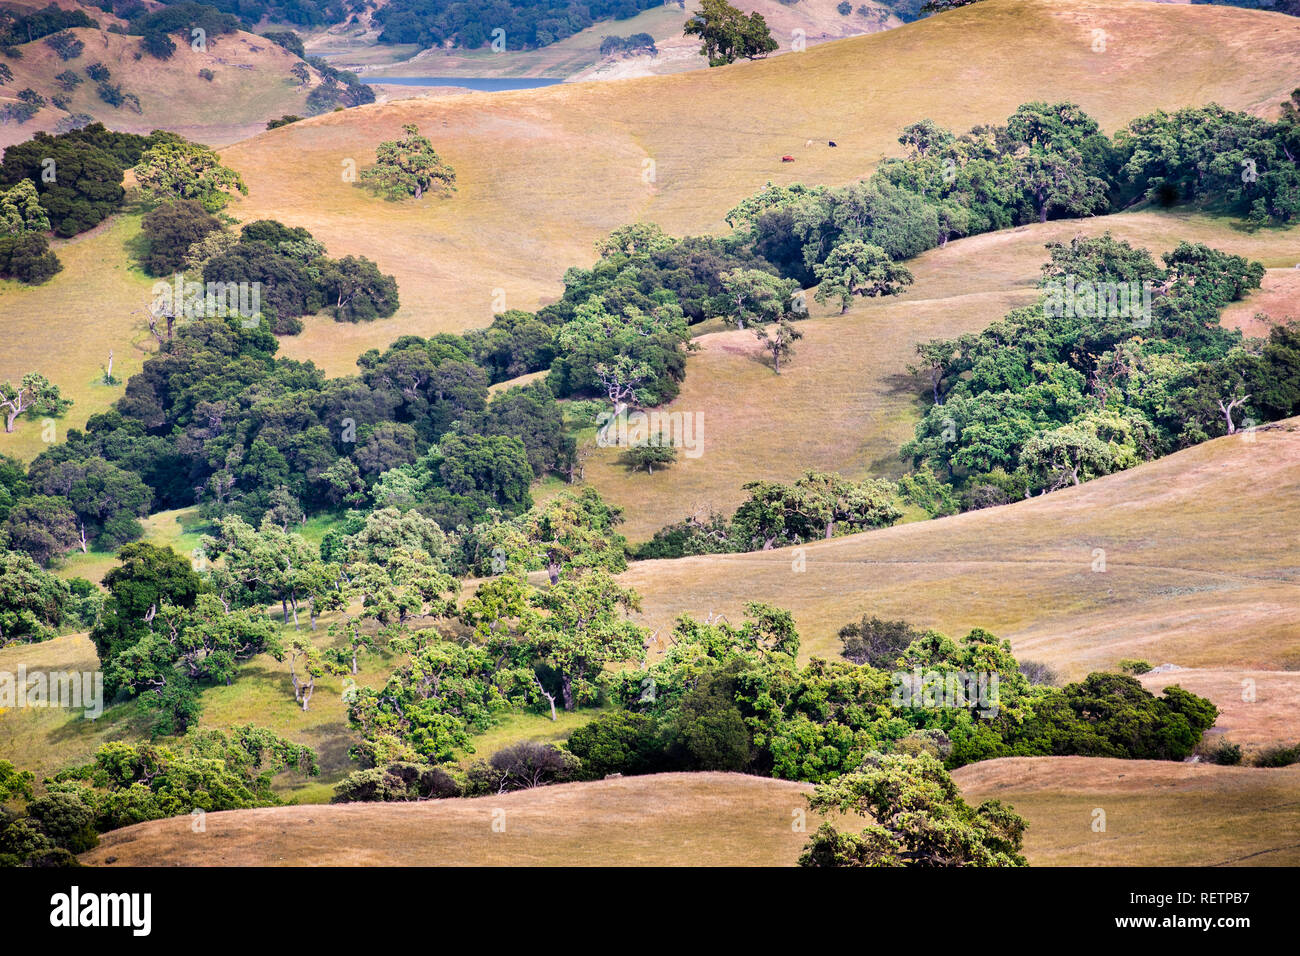 De l'herbe sèche couvrant les collines au sud de la baie de San Francisco, San Jose, Californie Banque D'Images